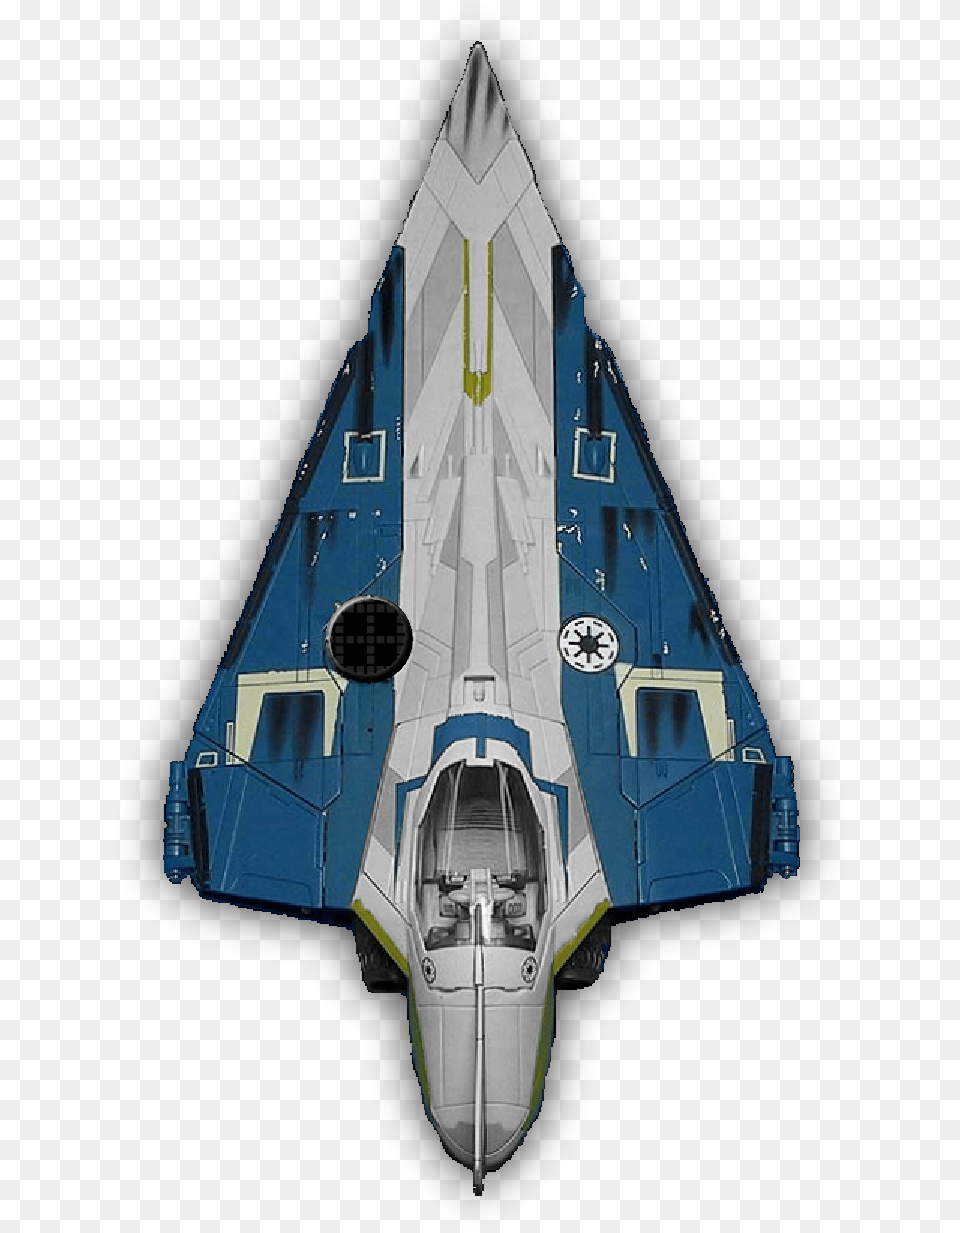 Star Wars Ship, Aircraft, Transportation, Vehicle, Rocket Png